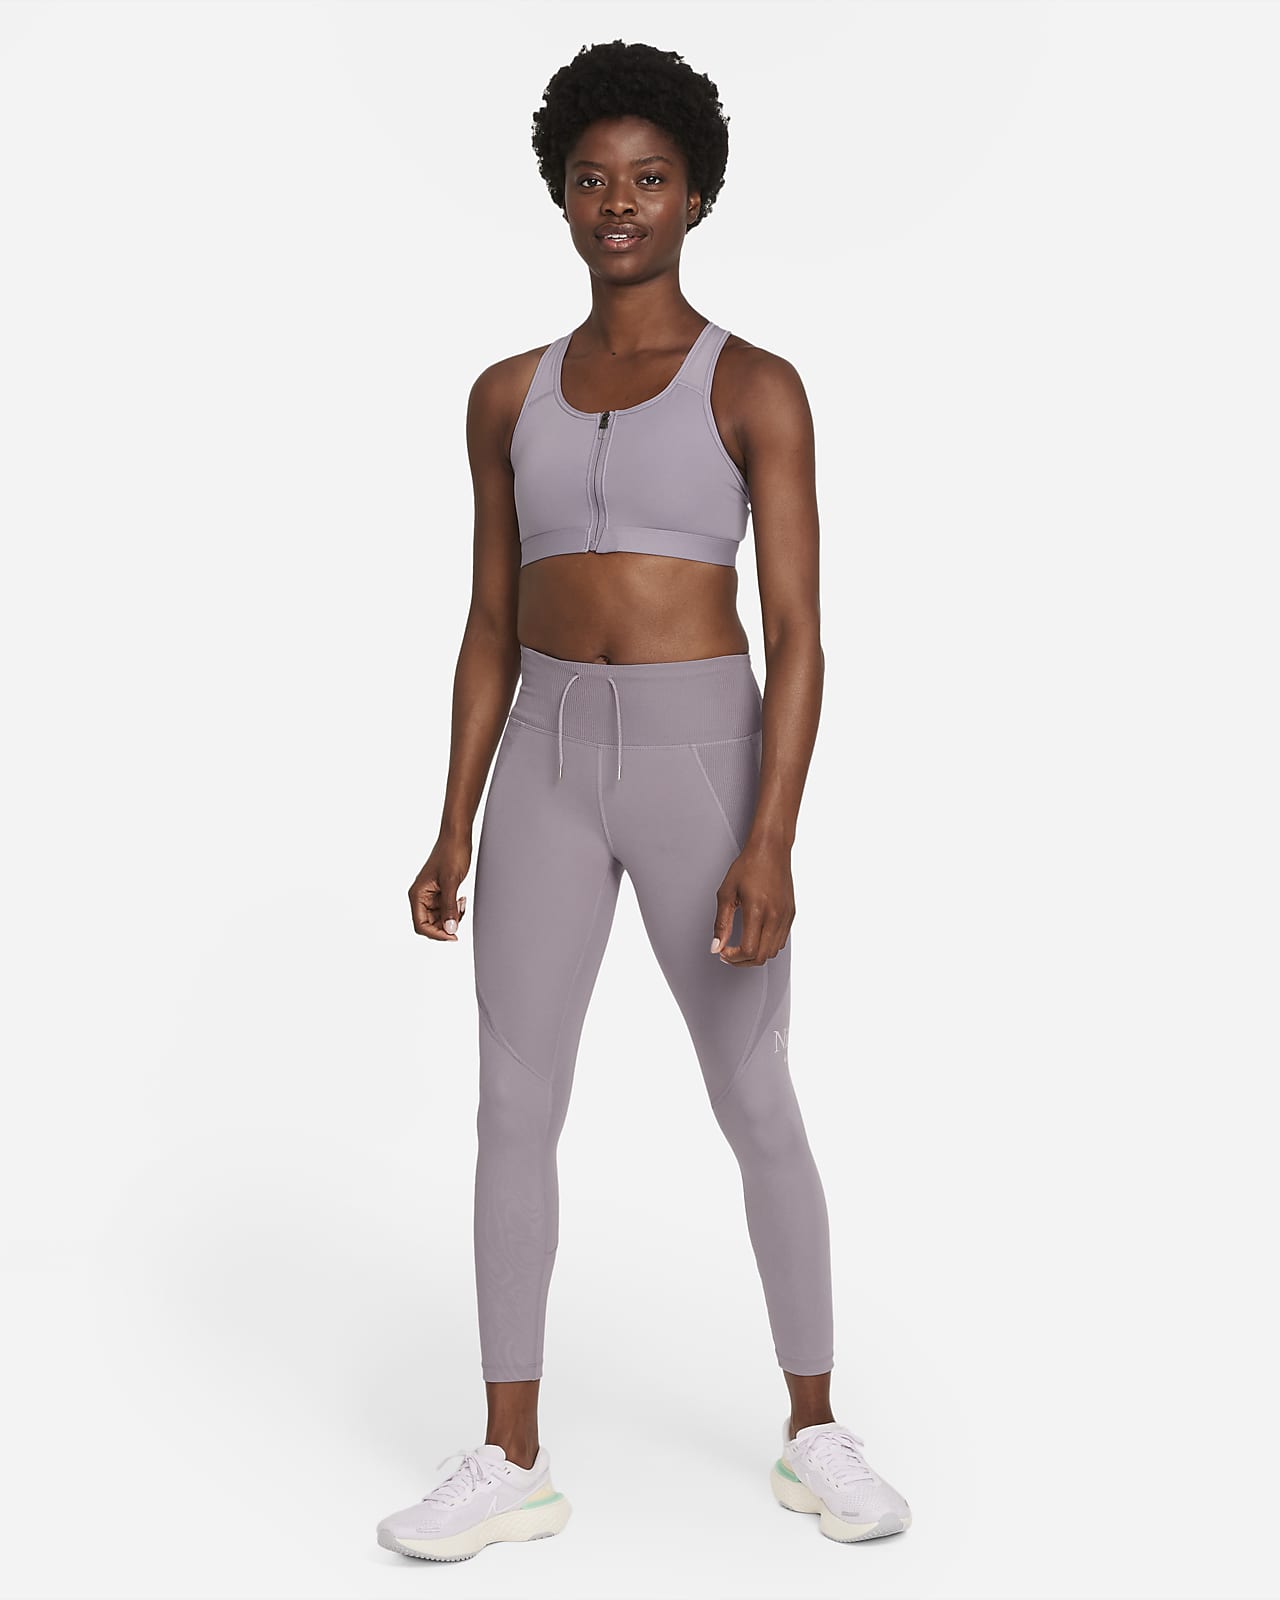 Nike Women's Dri-FIT Fold-Over Waist 7/8 Leggings DD4052-010 Black